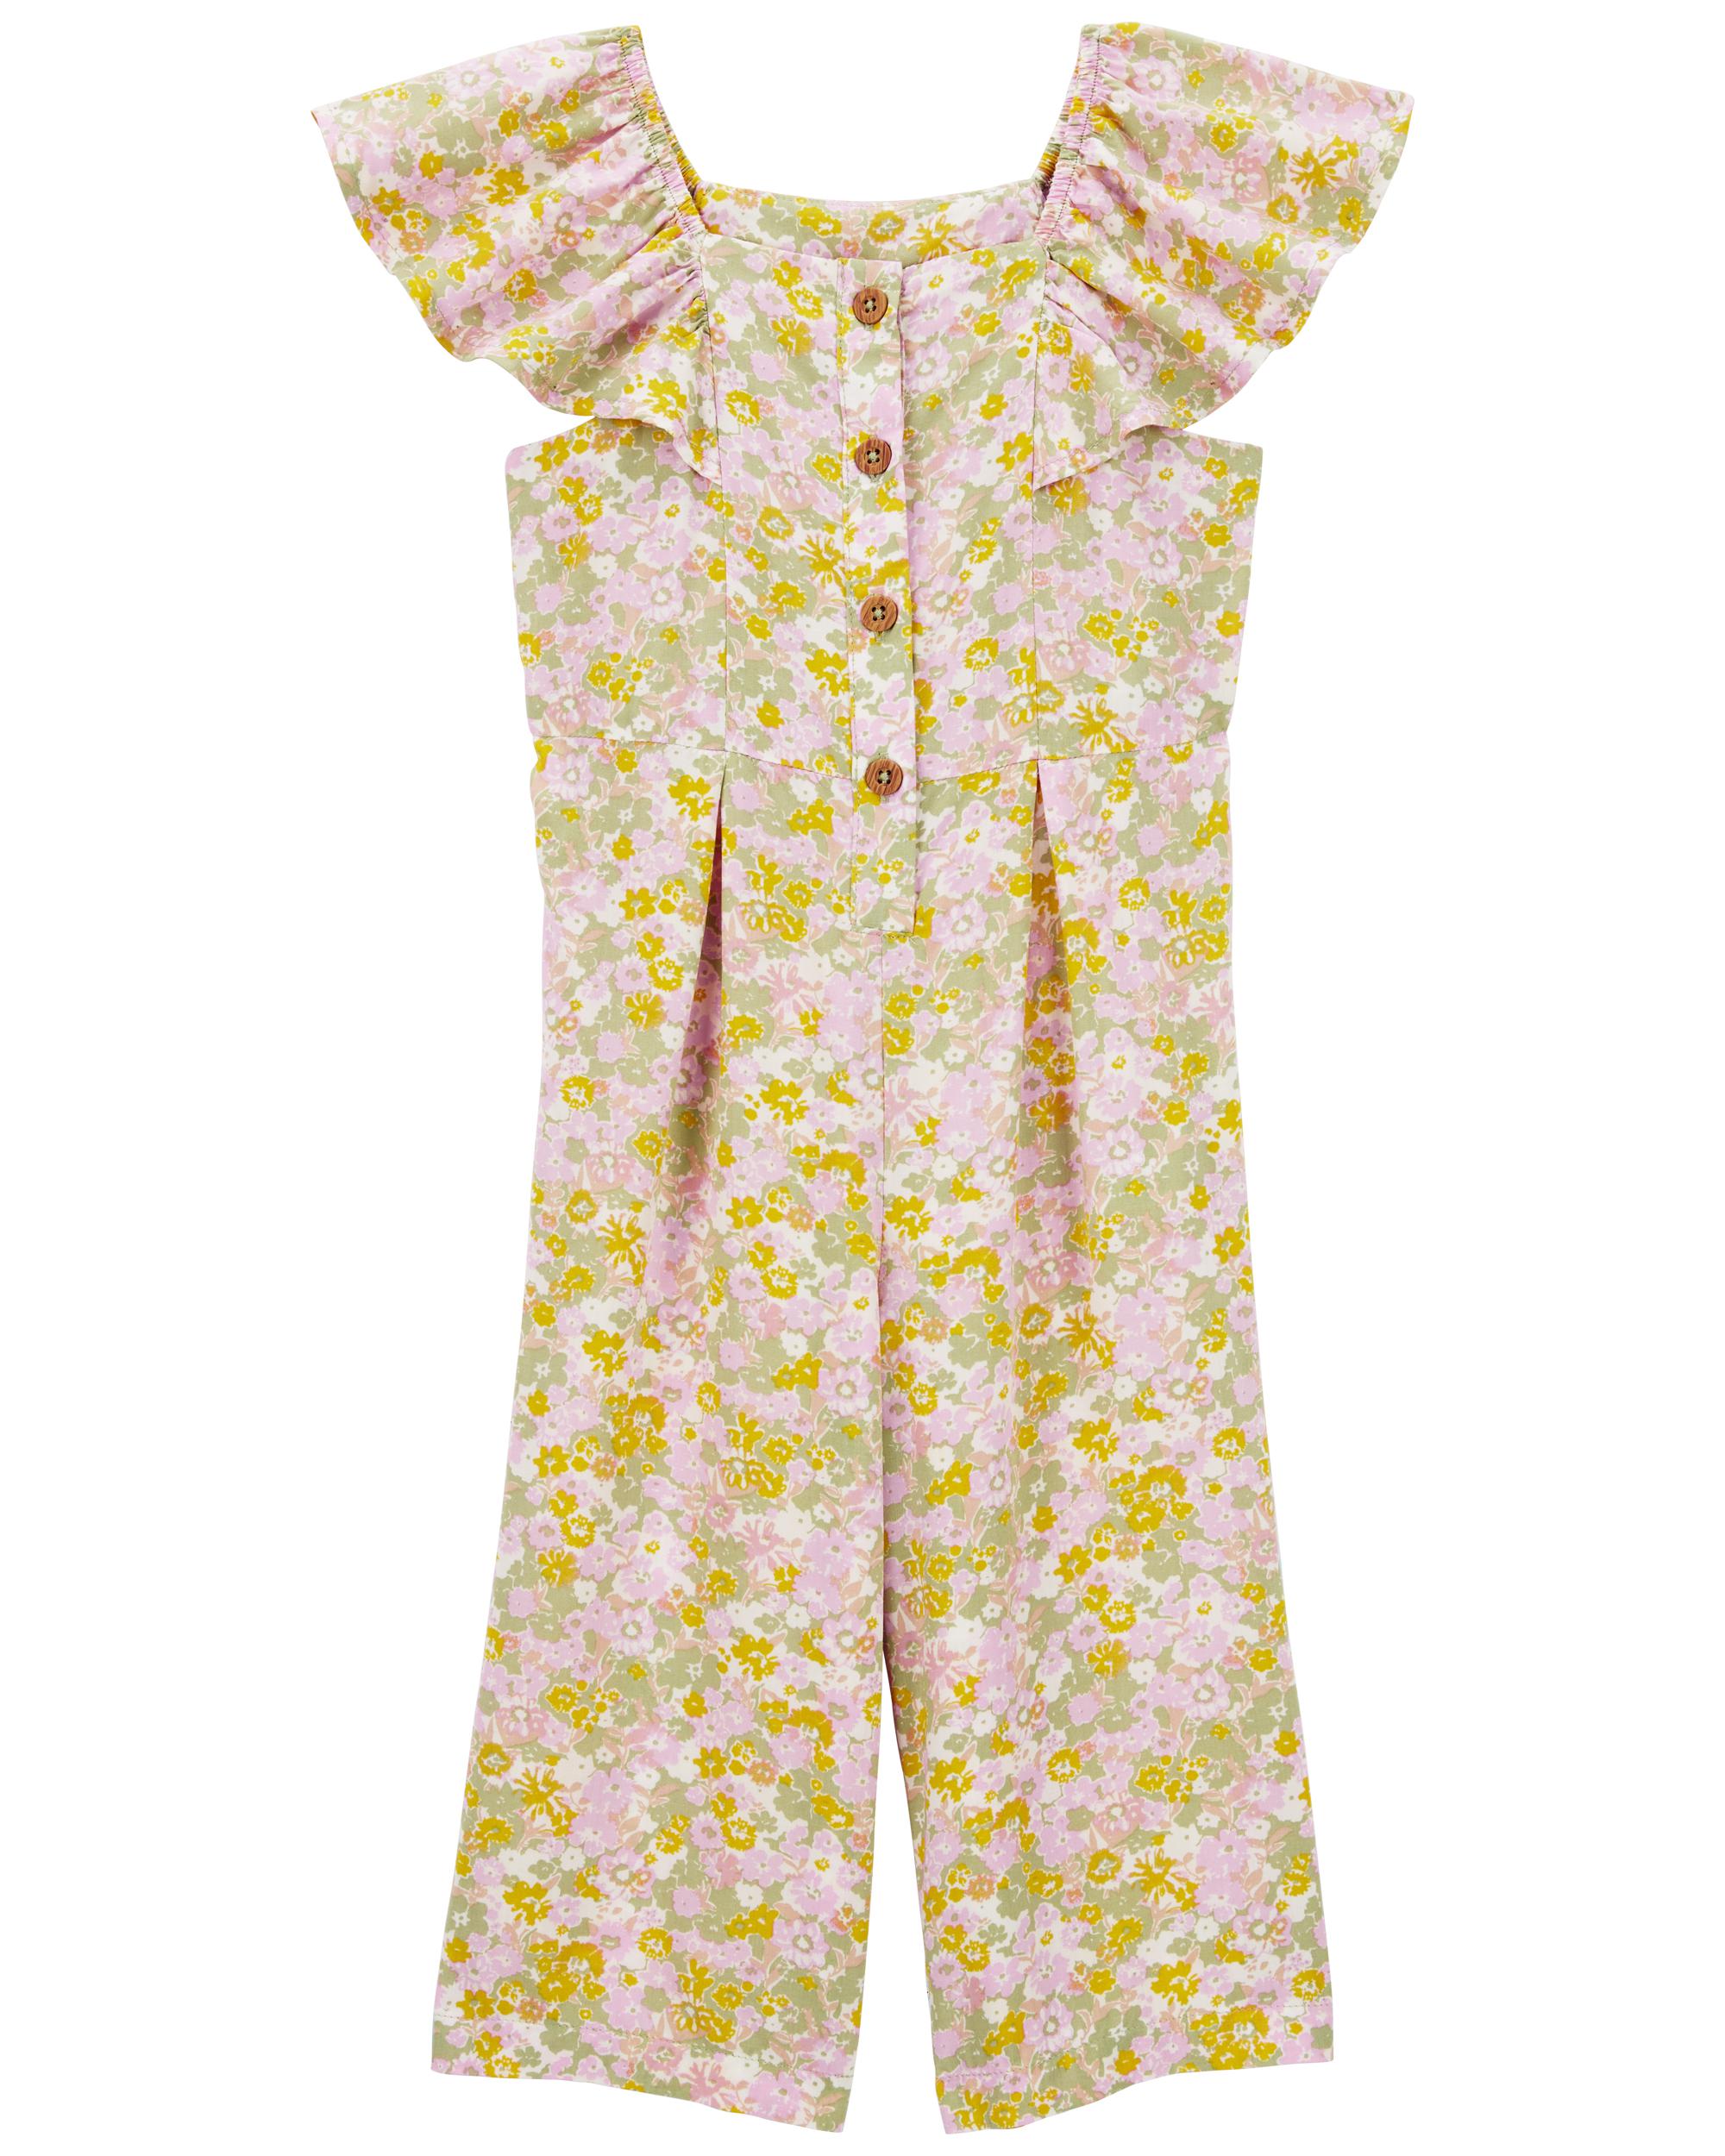 Toddler Floral Jumpsuit